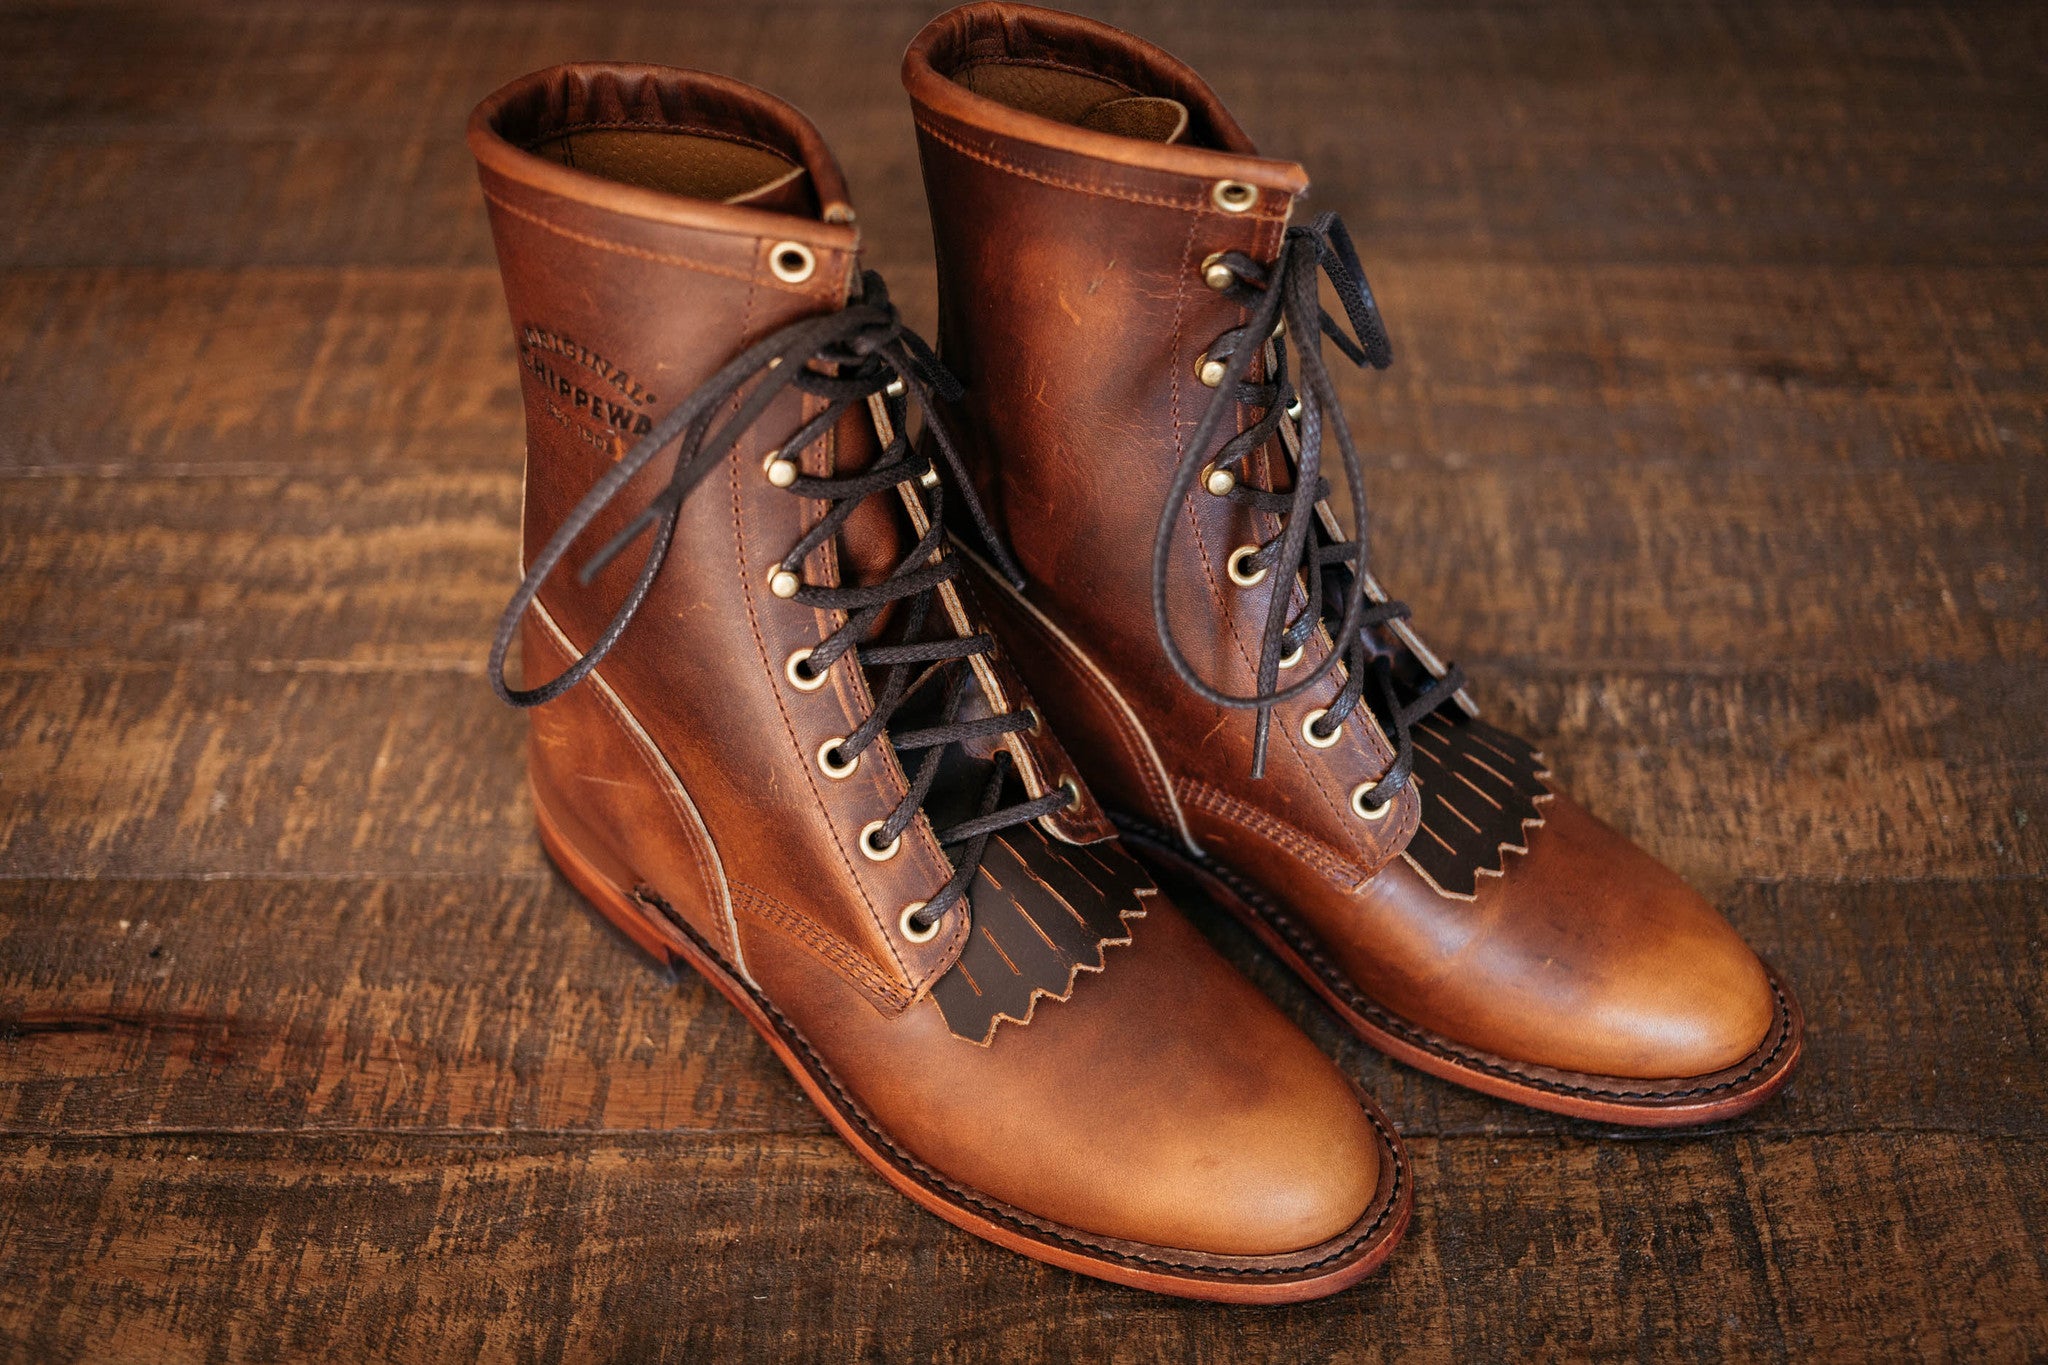 chippewa heritage boots